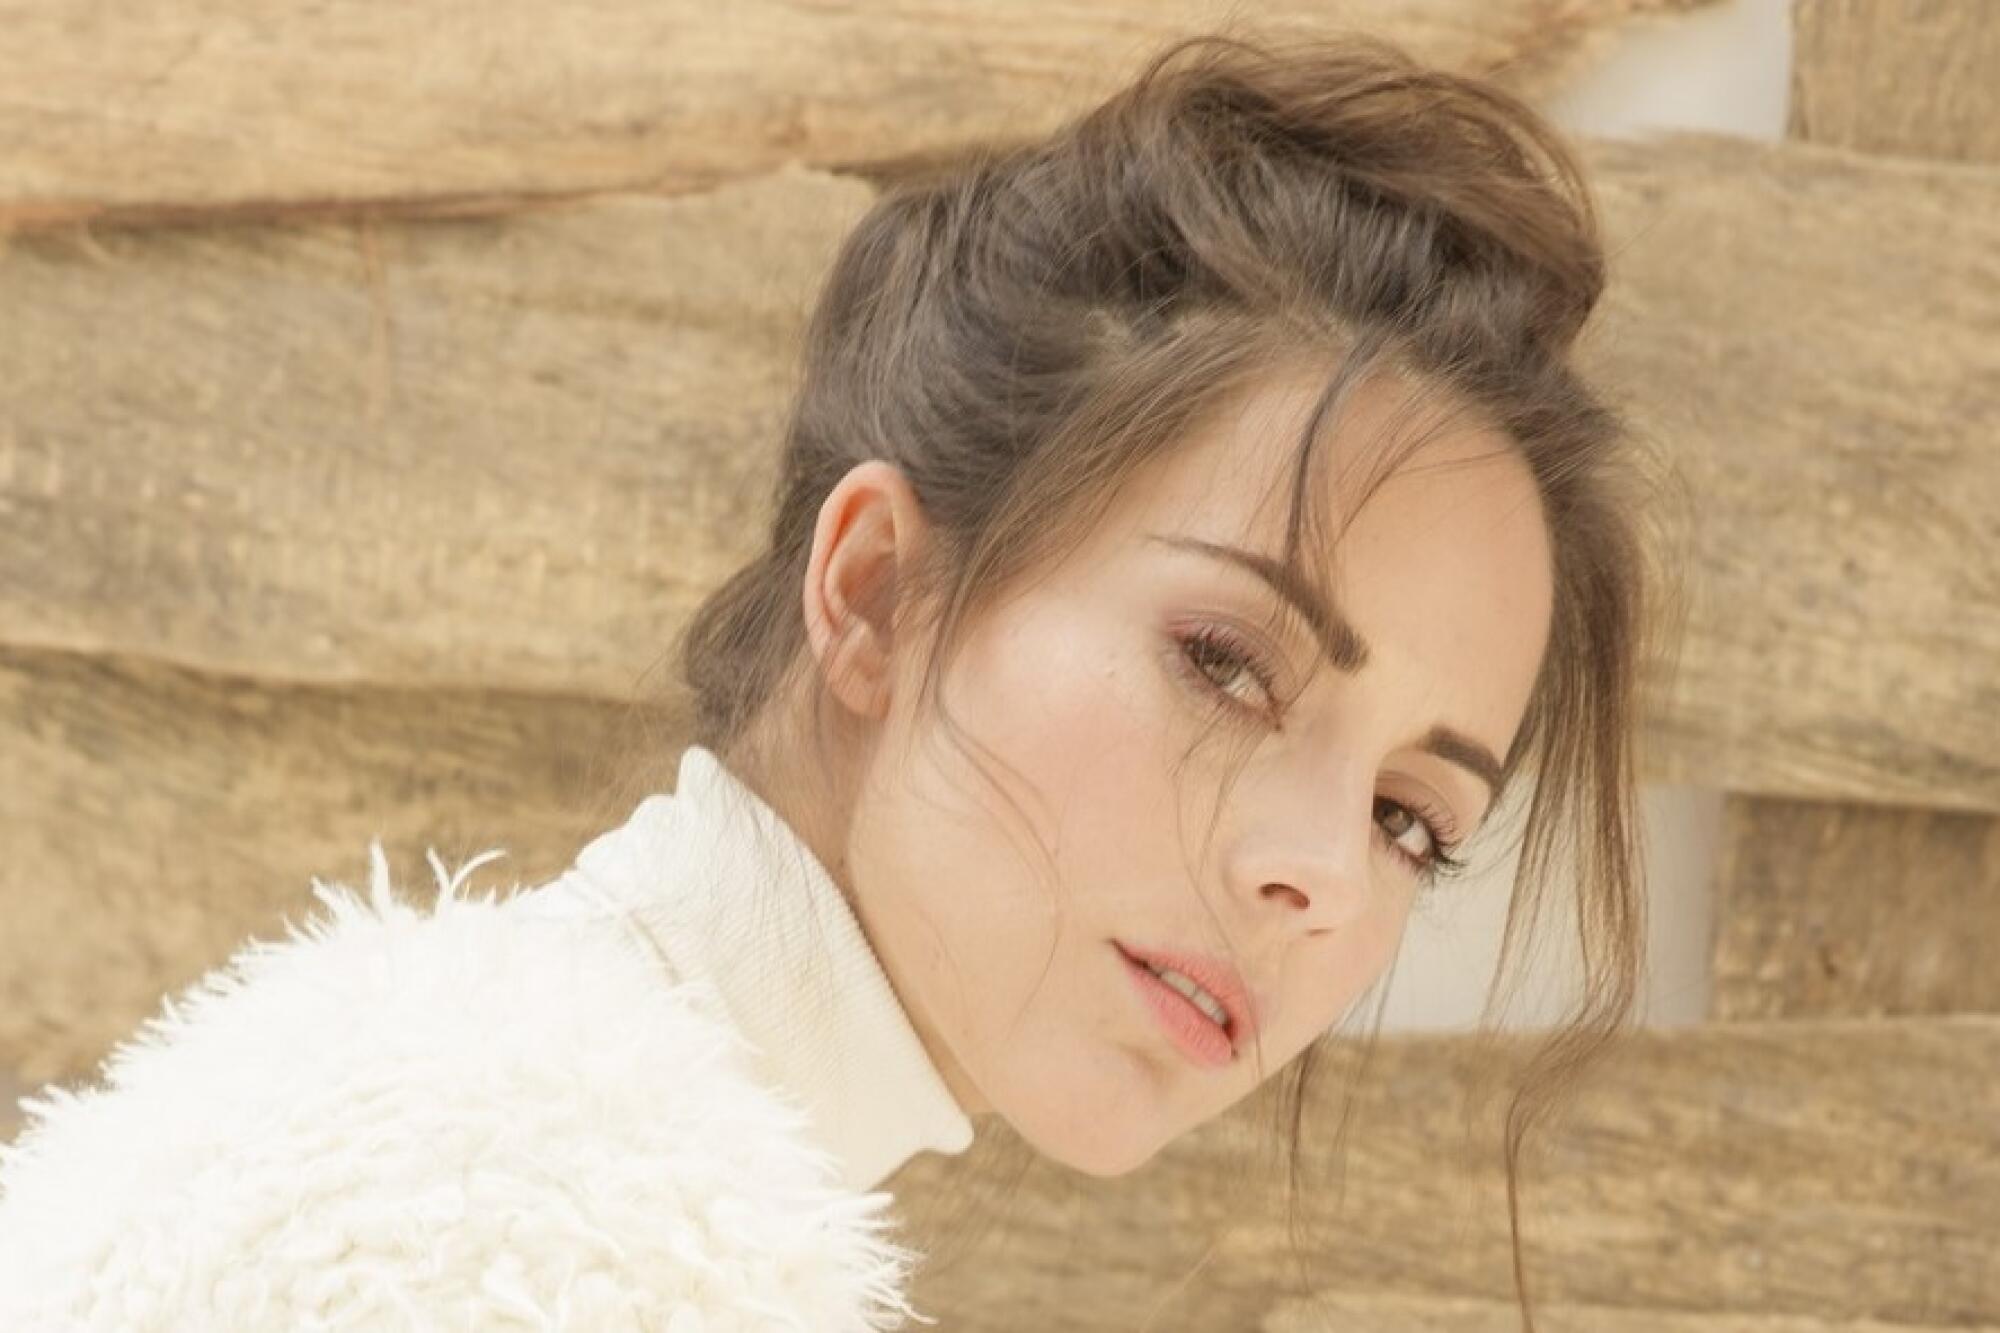 La actriz ecuatoriano-colombiana María Elisa Camargo protagoniza la nueva serie “MalaYerba”.